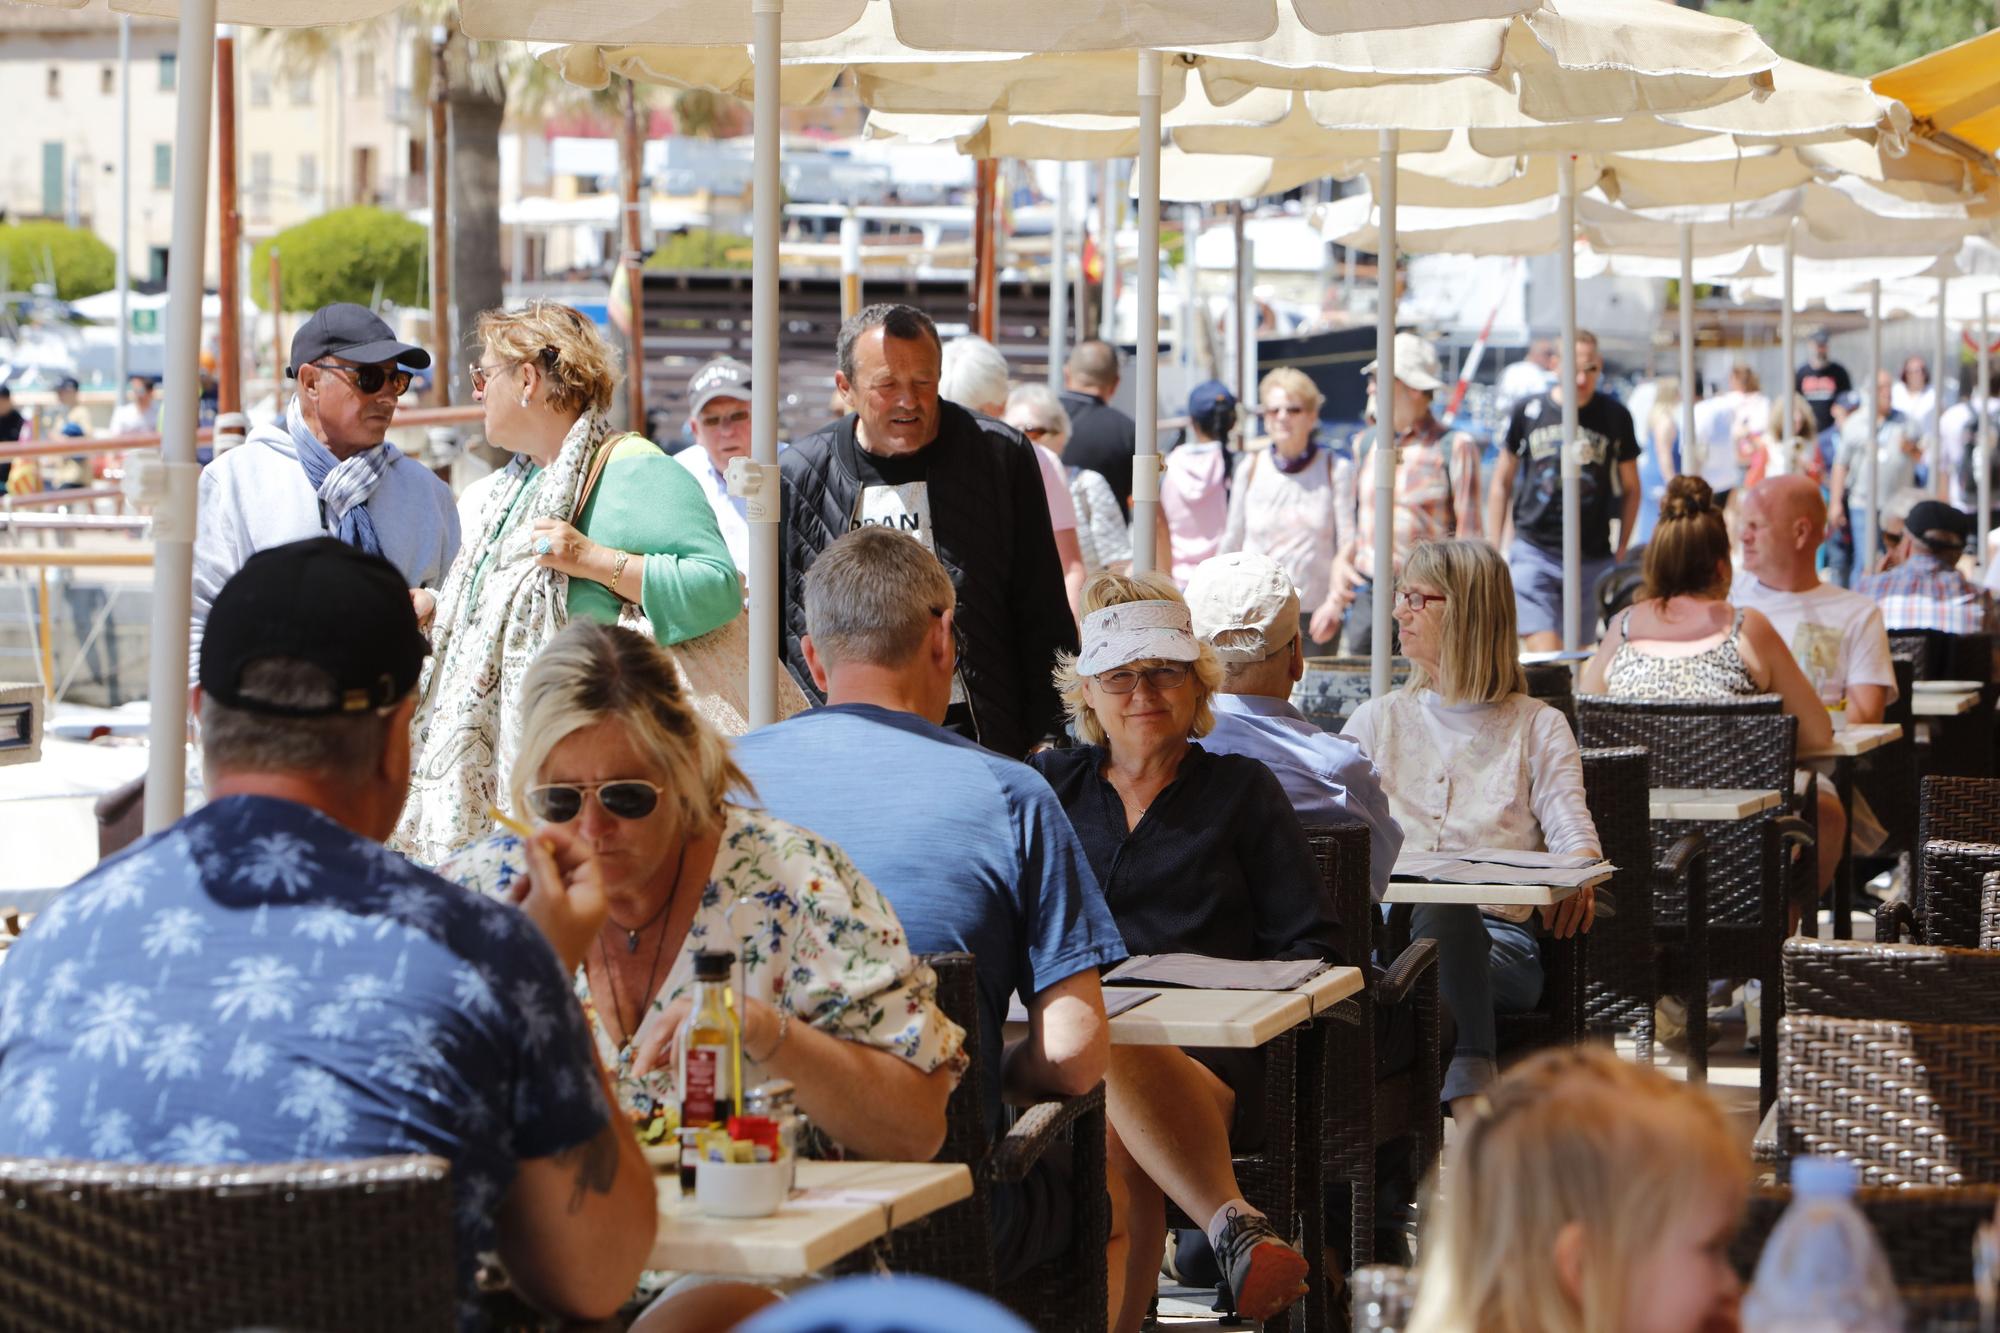 Sonne, Tram, Eis essen: So genießen die Mallorca-Urlauber die Stimmung in Port de Sóller